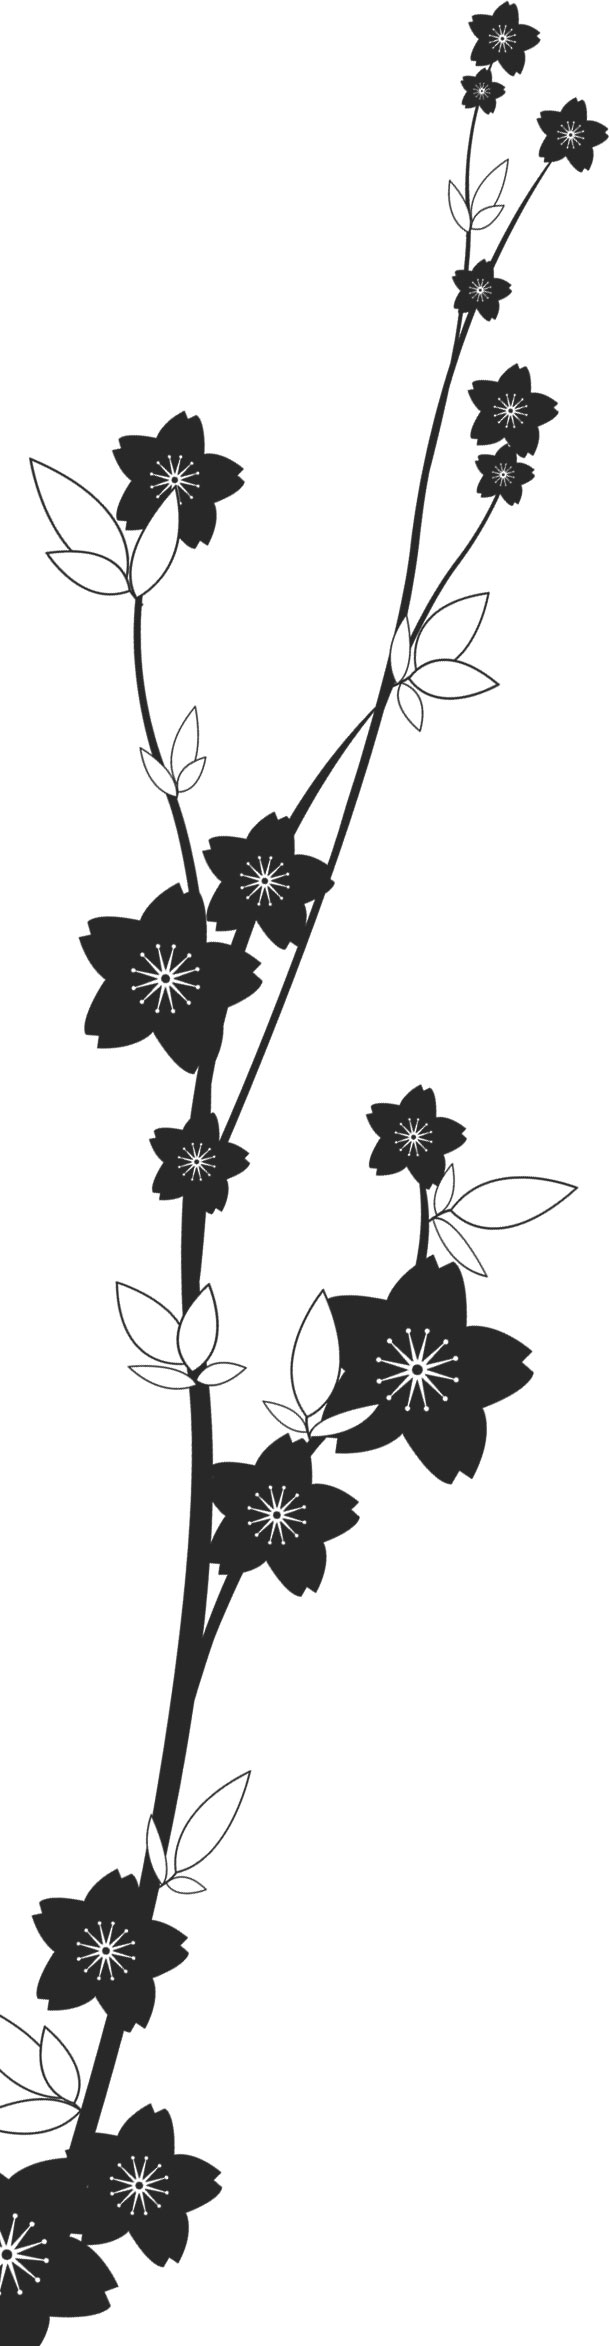 花のイラスト フリー素材 フレーム枠no 481 白黒 茎葉 桜型